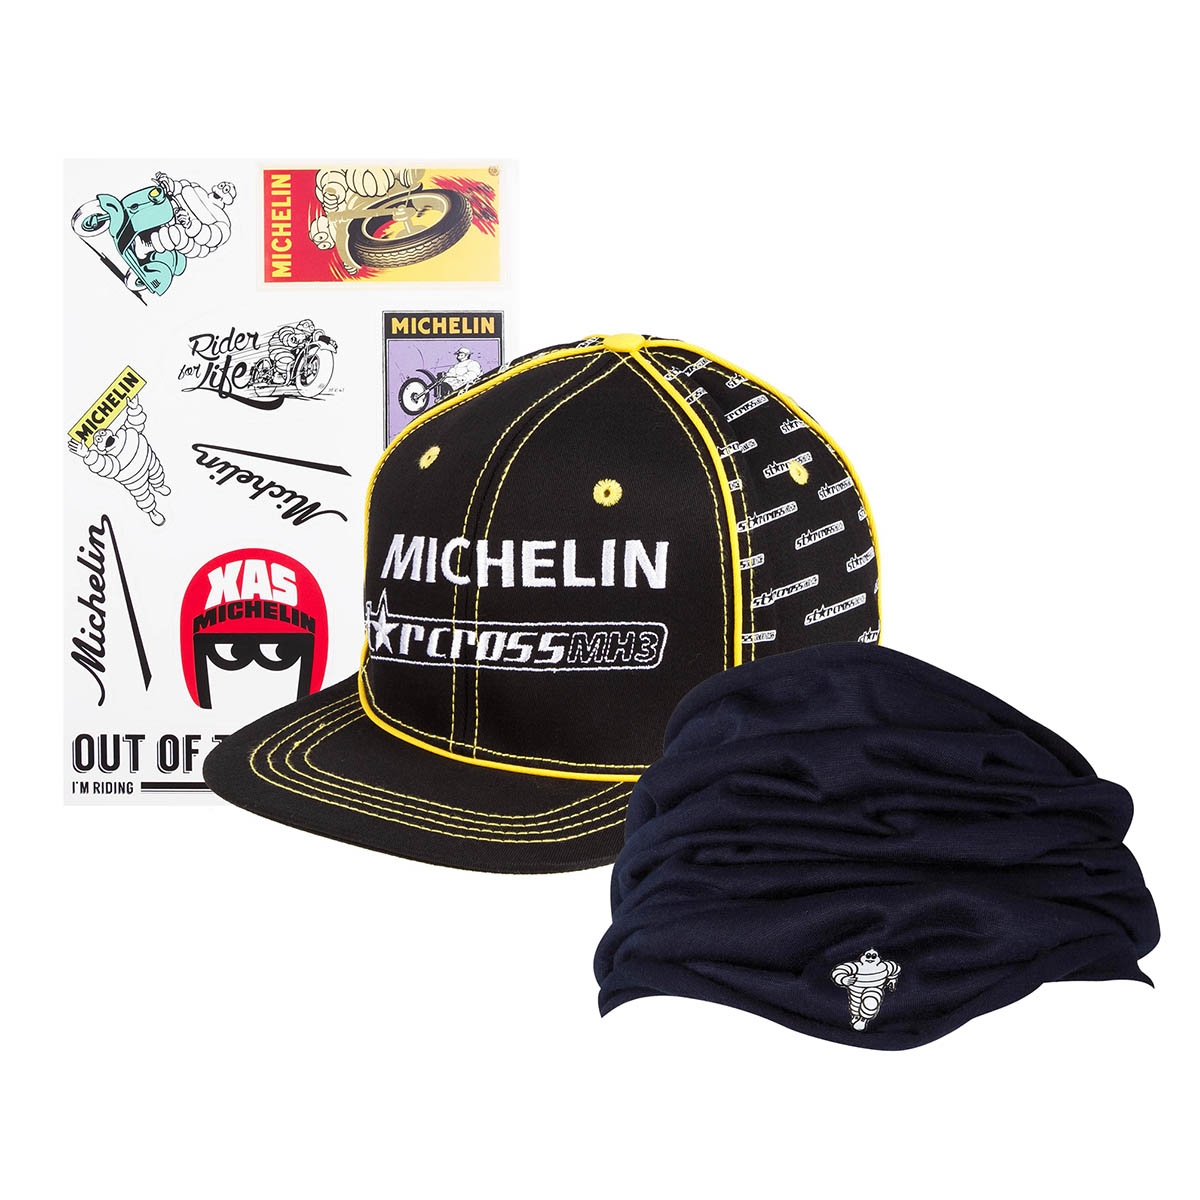 Michelin Sciarpa con Cappellino e Kit Adesivi